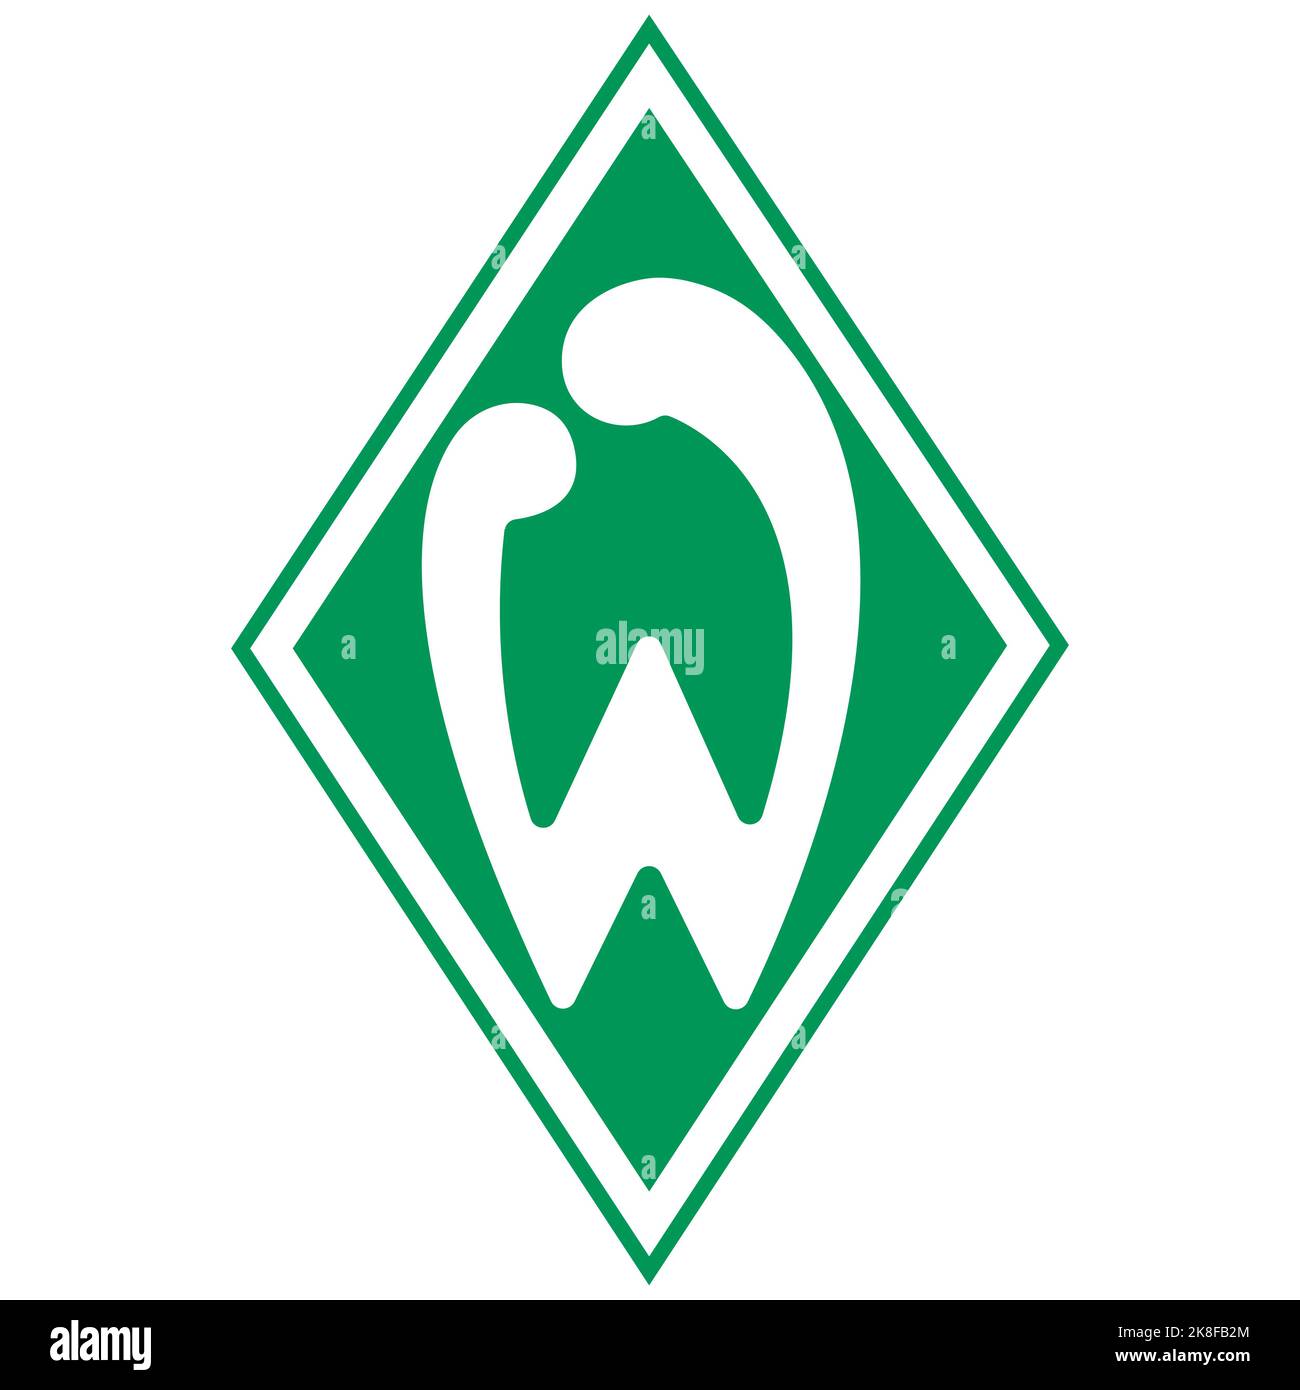 Francoforte sul meno, Germania - 10.23.2022 Logo della squadra di calcio tedesca Werder Bremen. Immagine vettoriale Illustrazione Vettoriale